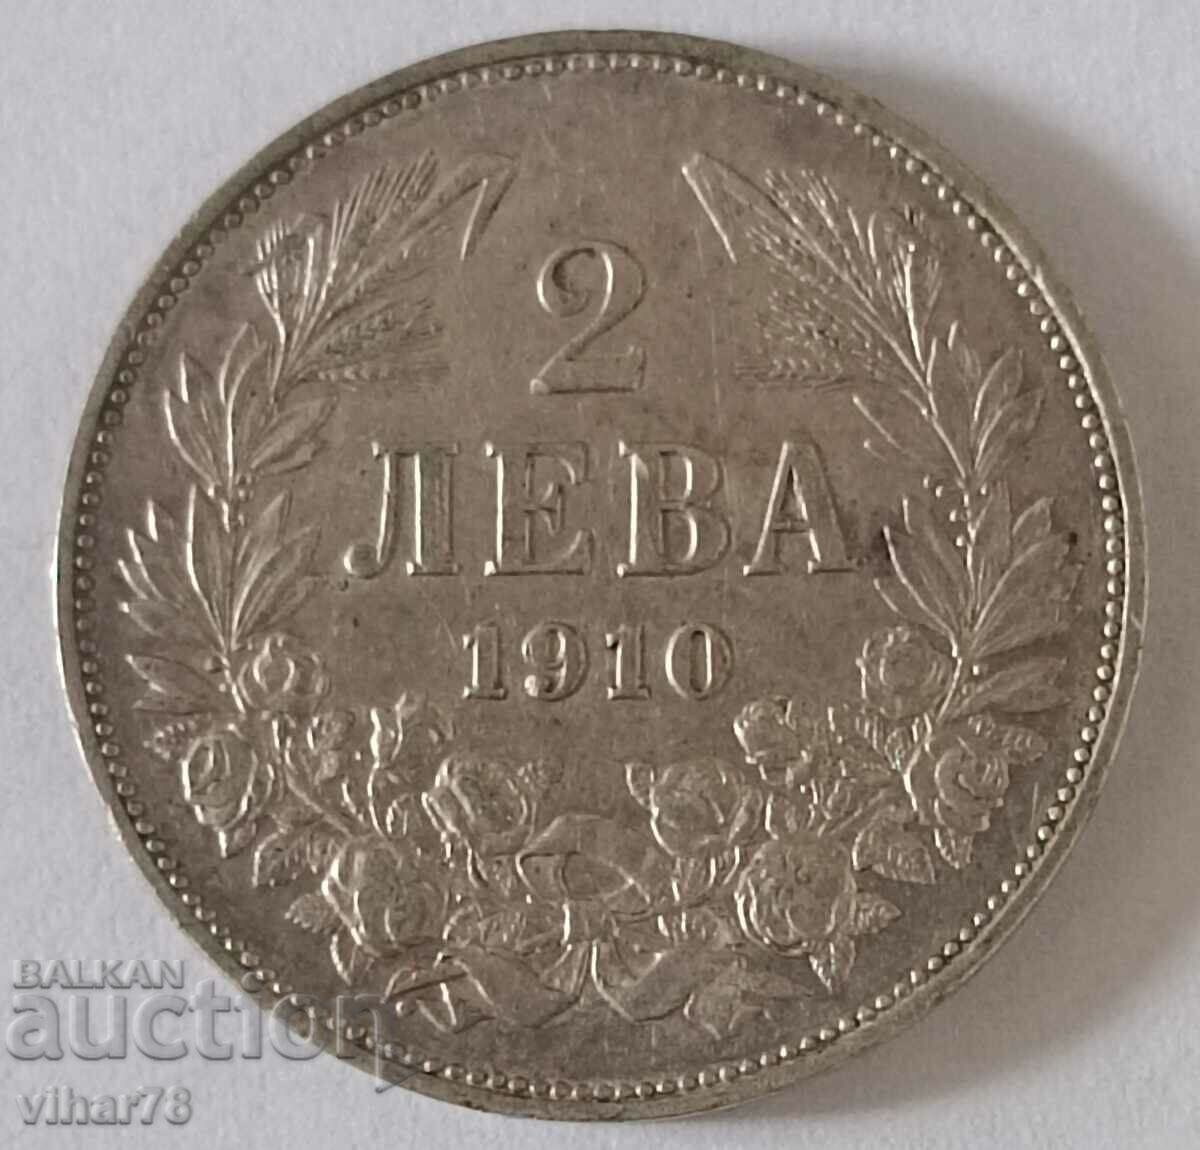 ΑΣΗΜΕΝΙΟ ΝΟΜΙΣΜΑ 2 λέβα 1910